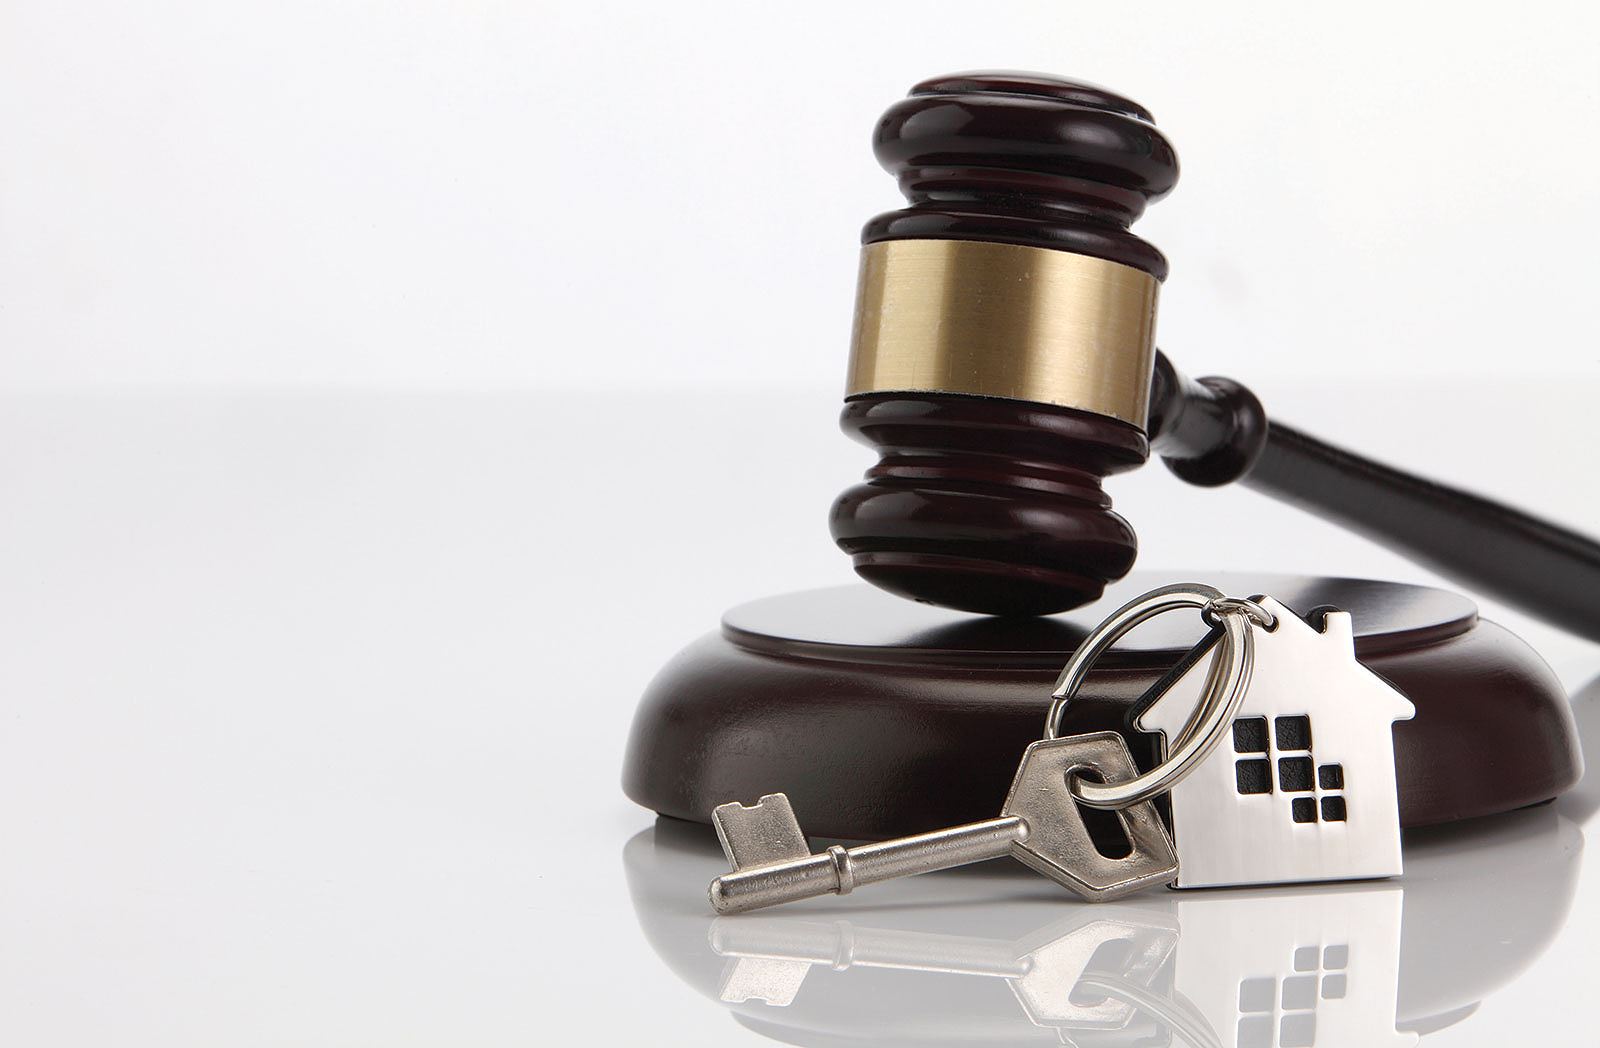 Tranh chấp chung cư ngoài vấn đề liên quan đến pháp lý, còn do các bên không thấu hiểu nhau. Ảnh: Shutterstock